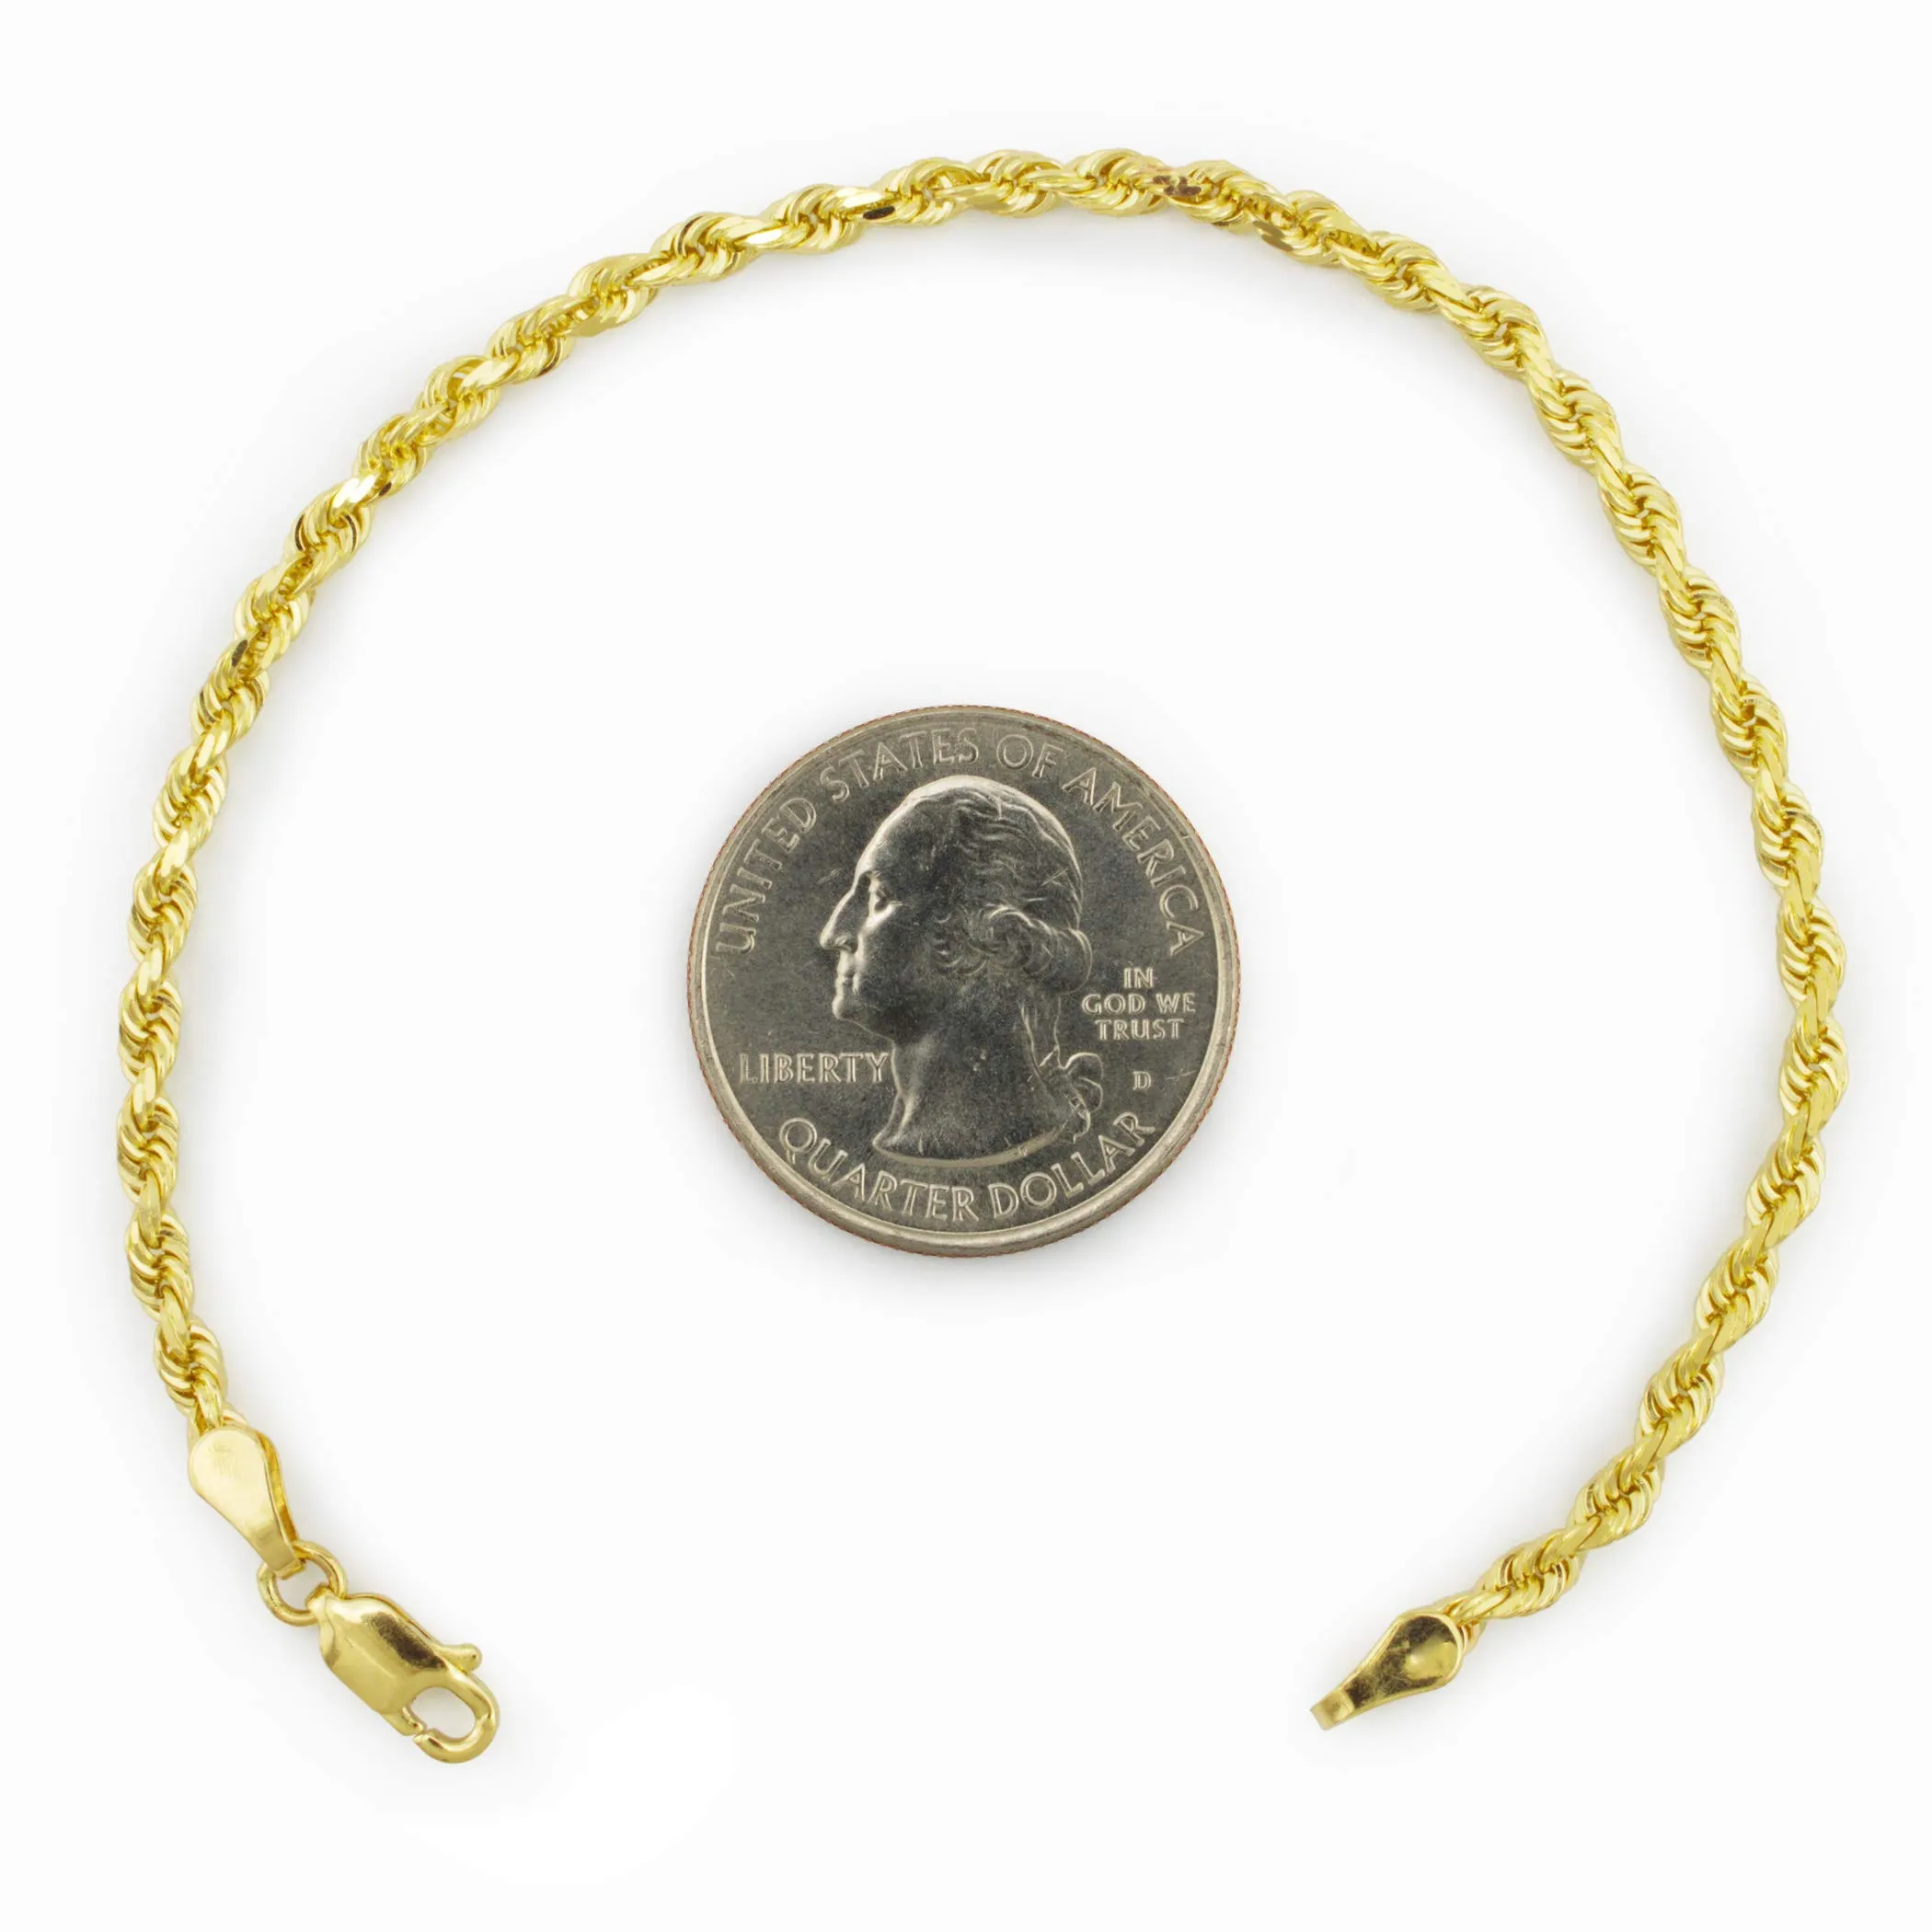 Браслет или ножной браслет из желтого золота 14 карат с веревочной цепочкой и бриллиантовой огранкой толщиной 2 мм